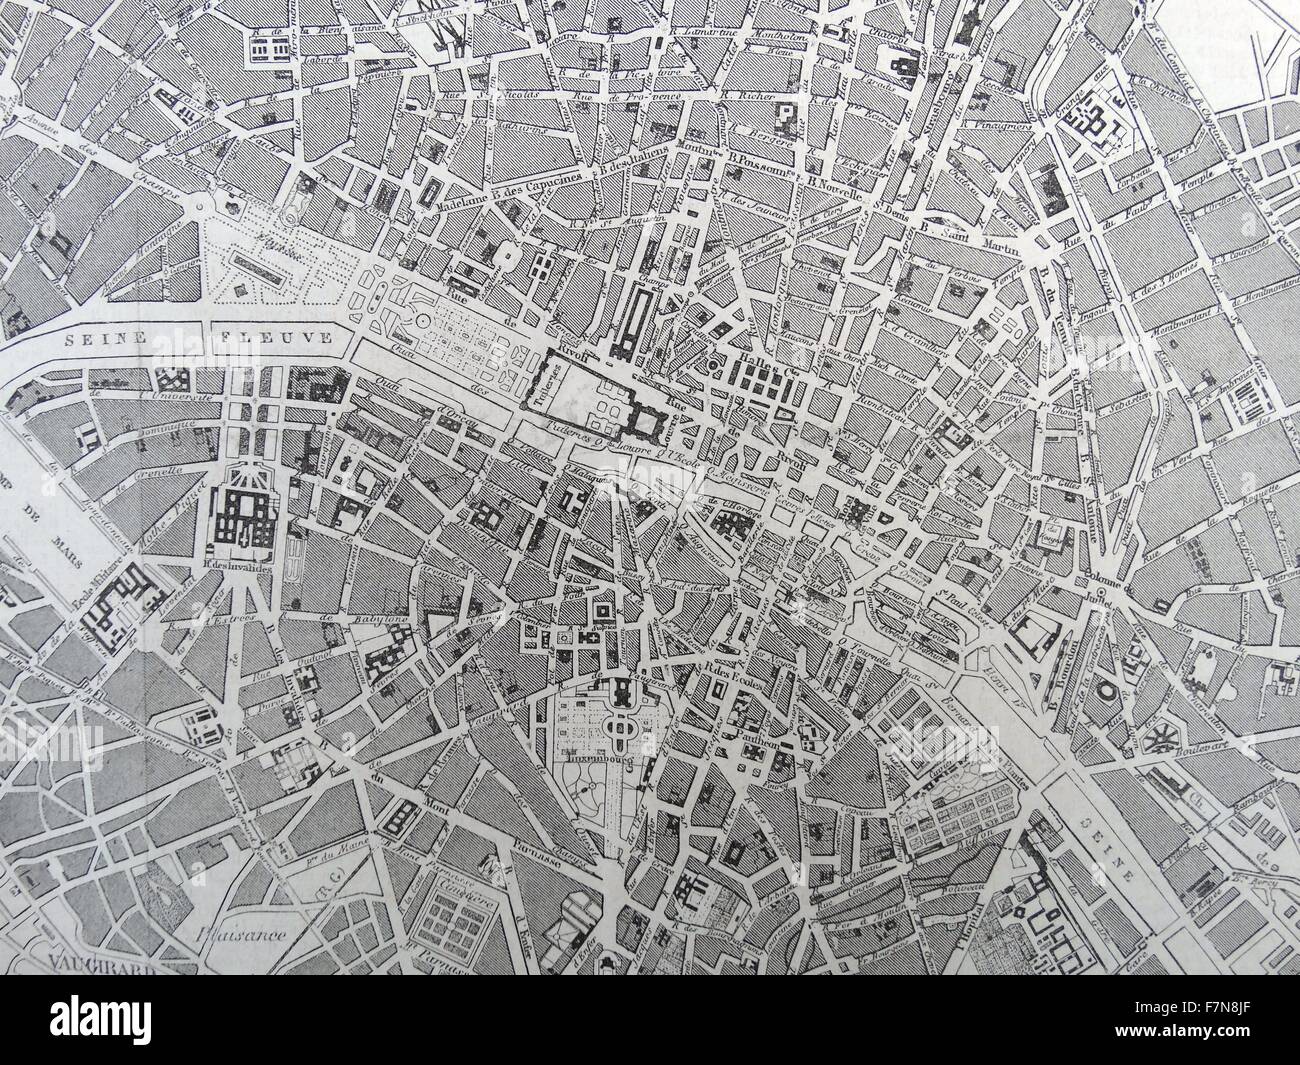 19e siècle Plan de Paris avec la Seine. Datée 1880 Banque D'Images